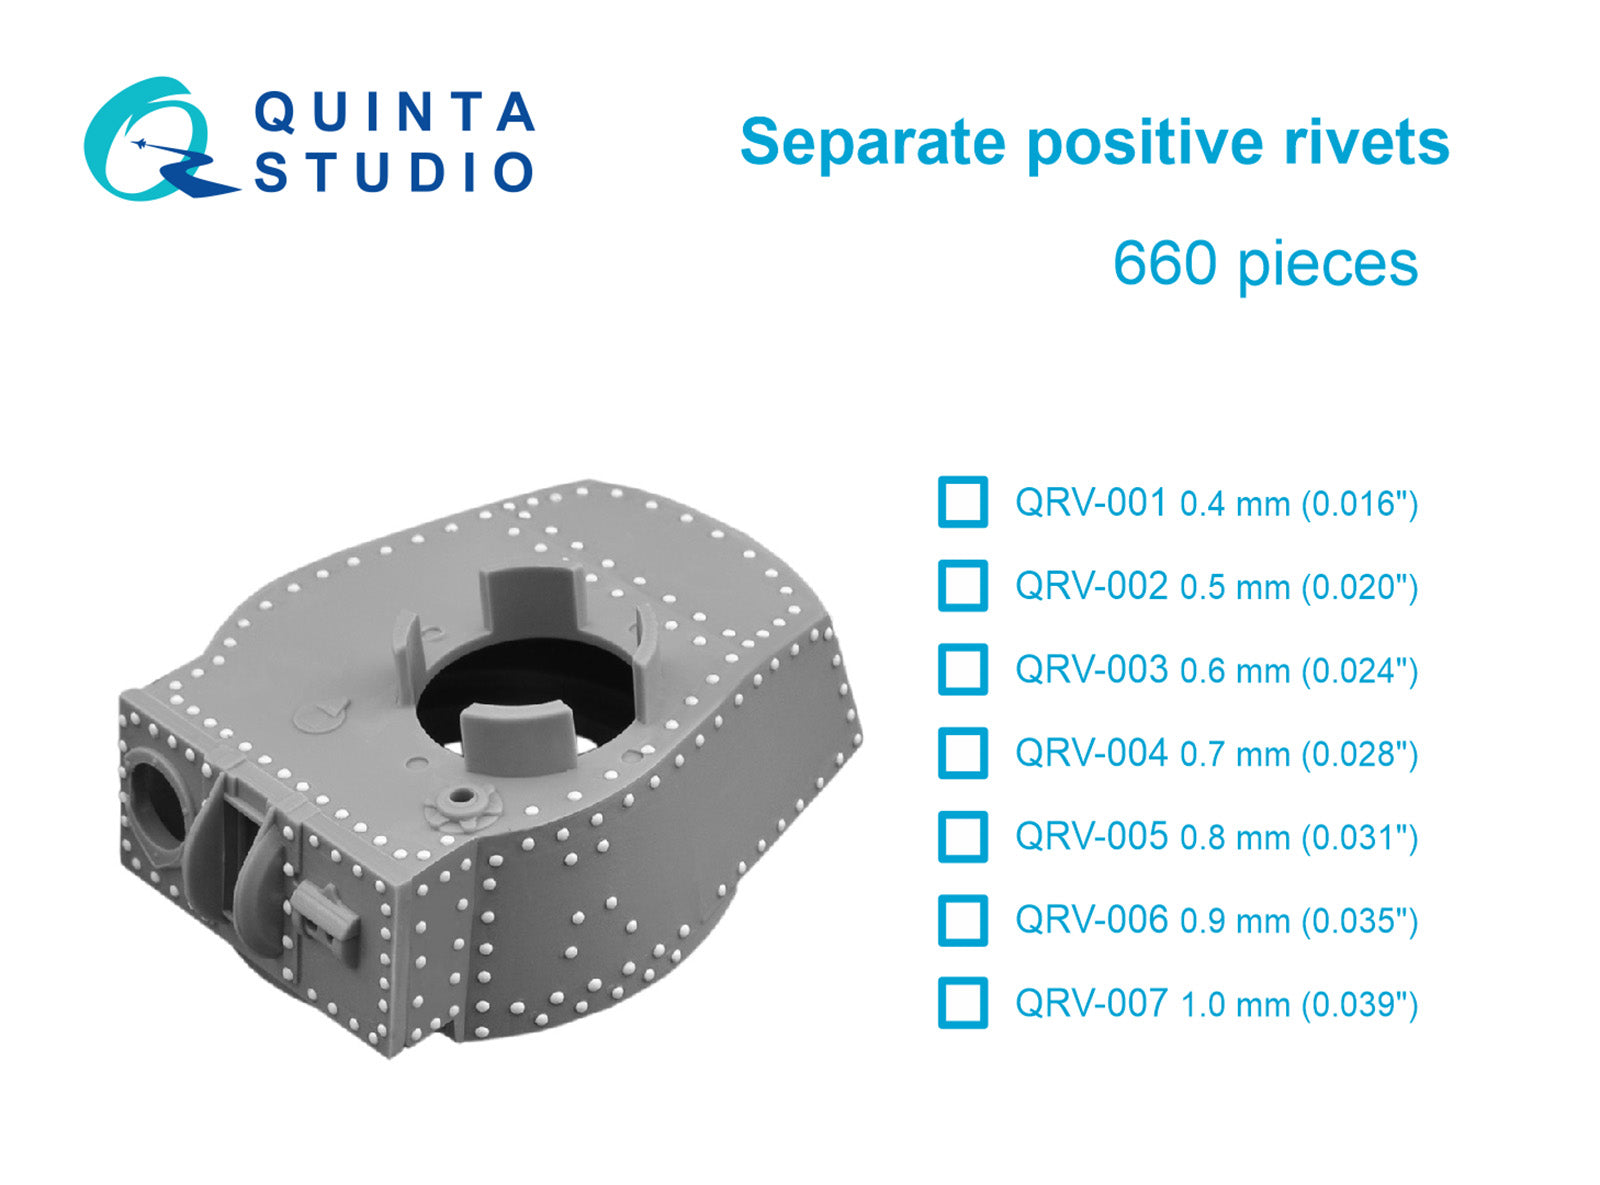 Quinta Studio - Separate positive rivets, 0.8mm (0.031") 660 pcs QRV-005